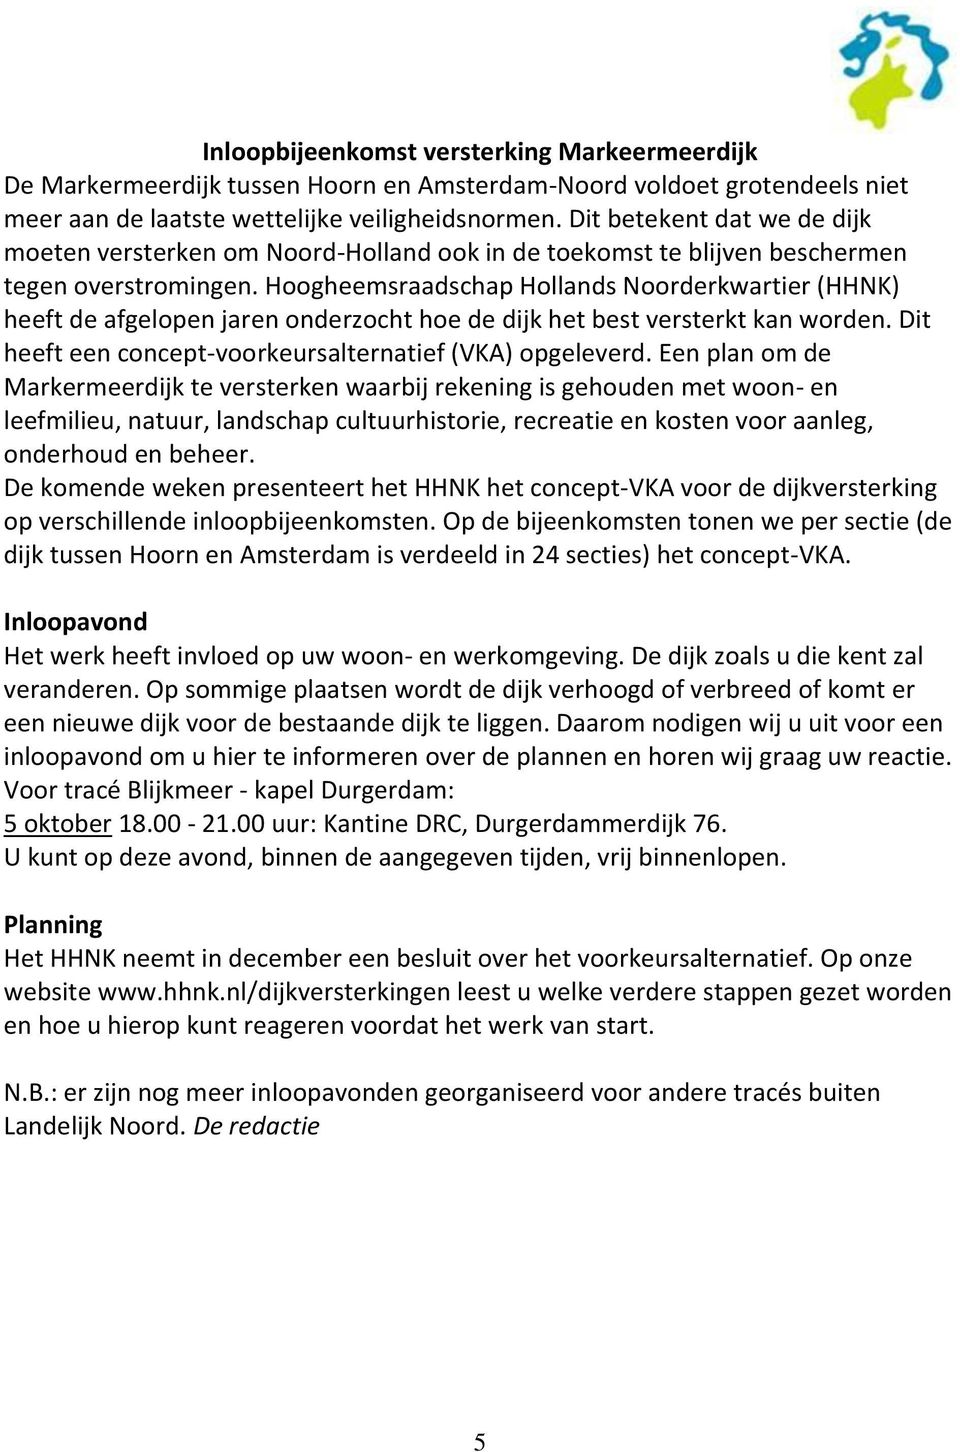 Hoogheemsraadschap Hollands Noorderkwartier (HHNK) heeft de afgelopen jaren onderzocht hoe de dijk het best versterkt kan worden. Dit heeft een concept-voorkeursalternatief (VKA) opgeleverd.